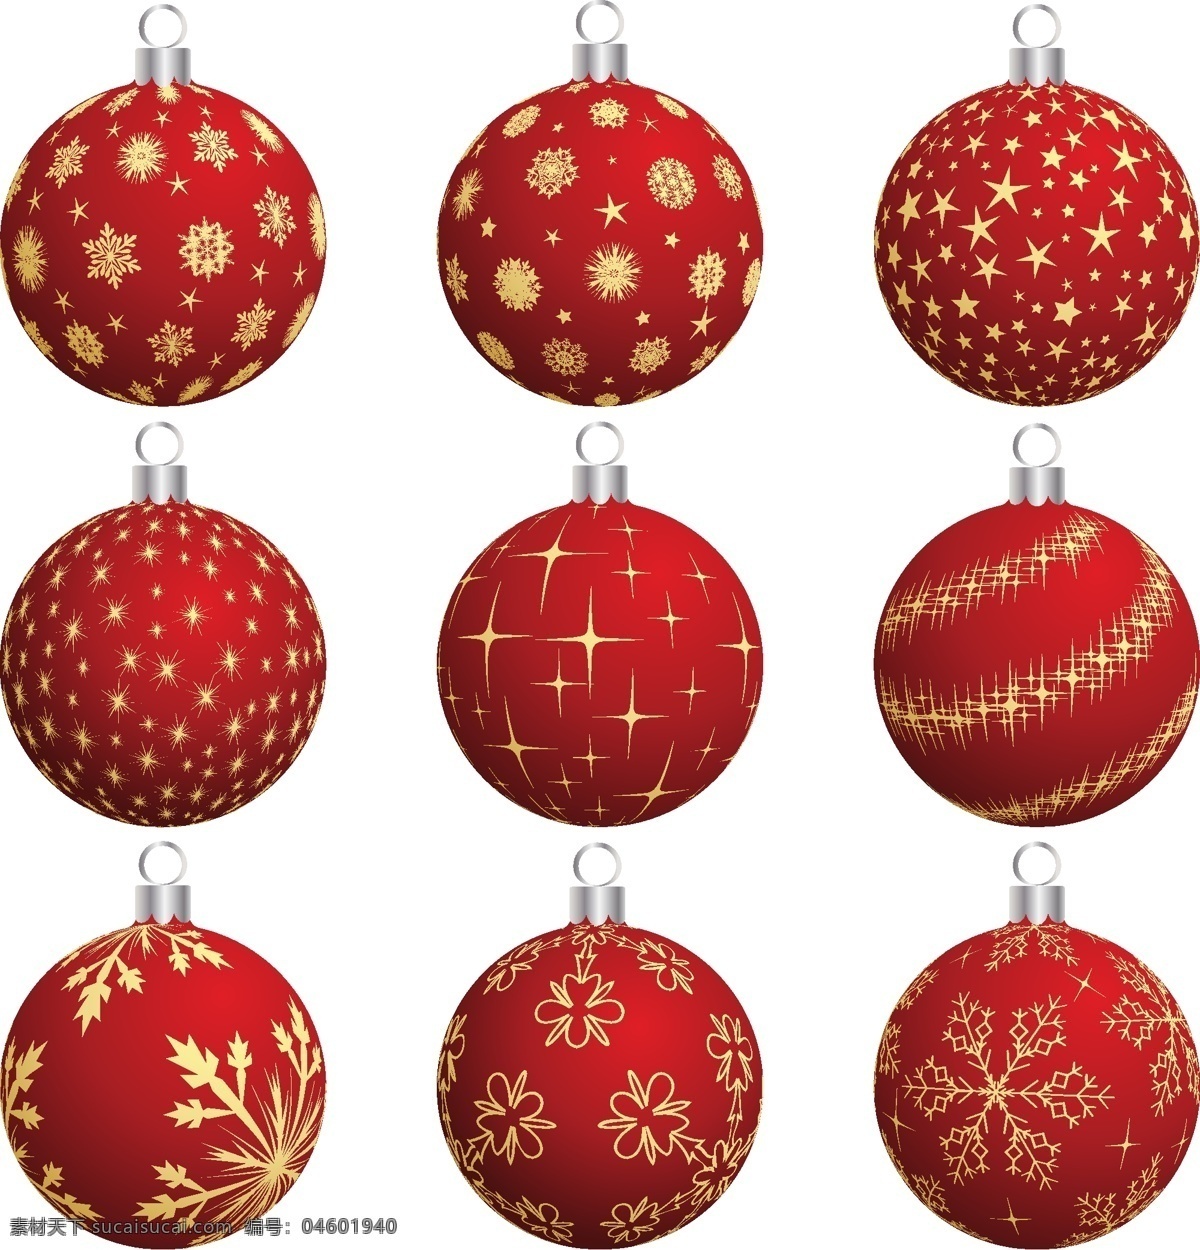 圣诞节 装饰 球 向量 集 web 创意 高分辨率 画 接口 免费 病 媒 生物 时尚 原始的 高质量 图形 质量 新鲜的 设计新的 新的 ui元素 hd 元素 详细的 圣诞树 饰品 红色的 载体 矢量图